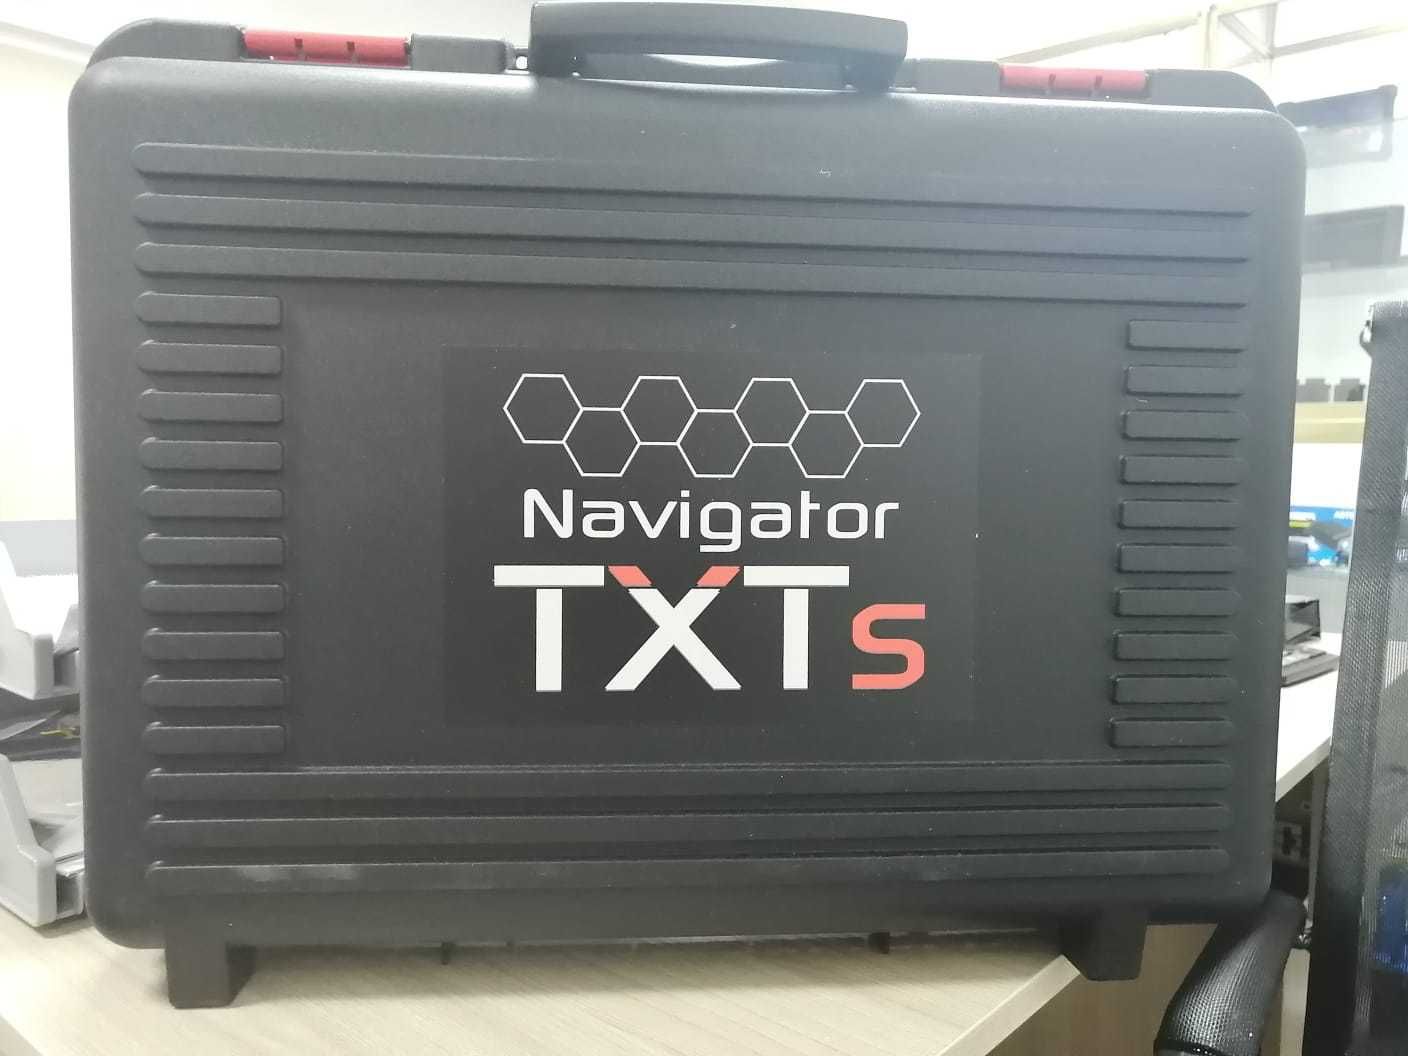 Texa Navigator TxT's Truck - для коммерческого транспорта